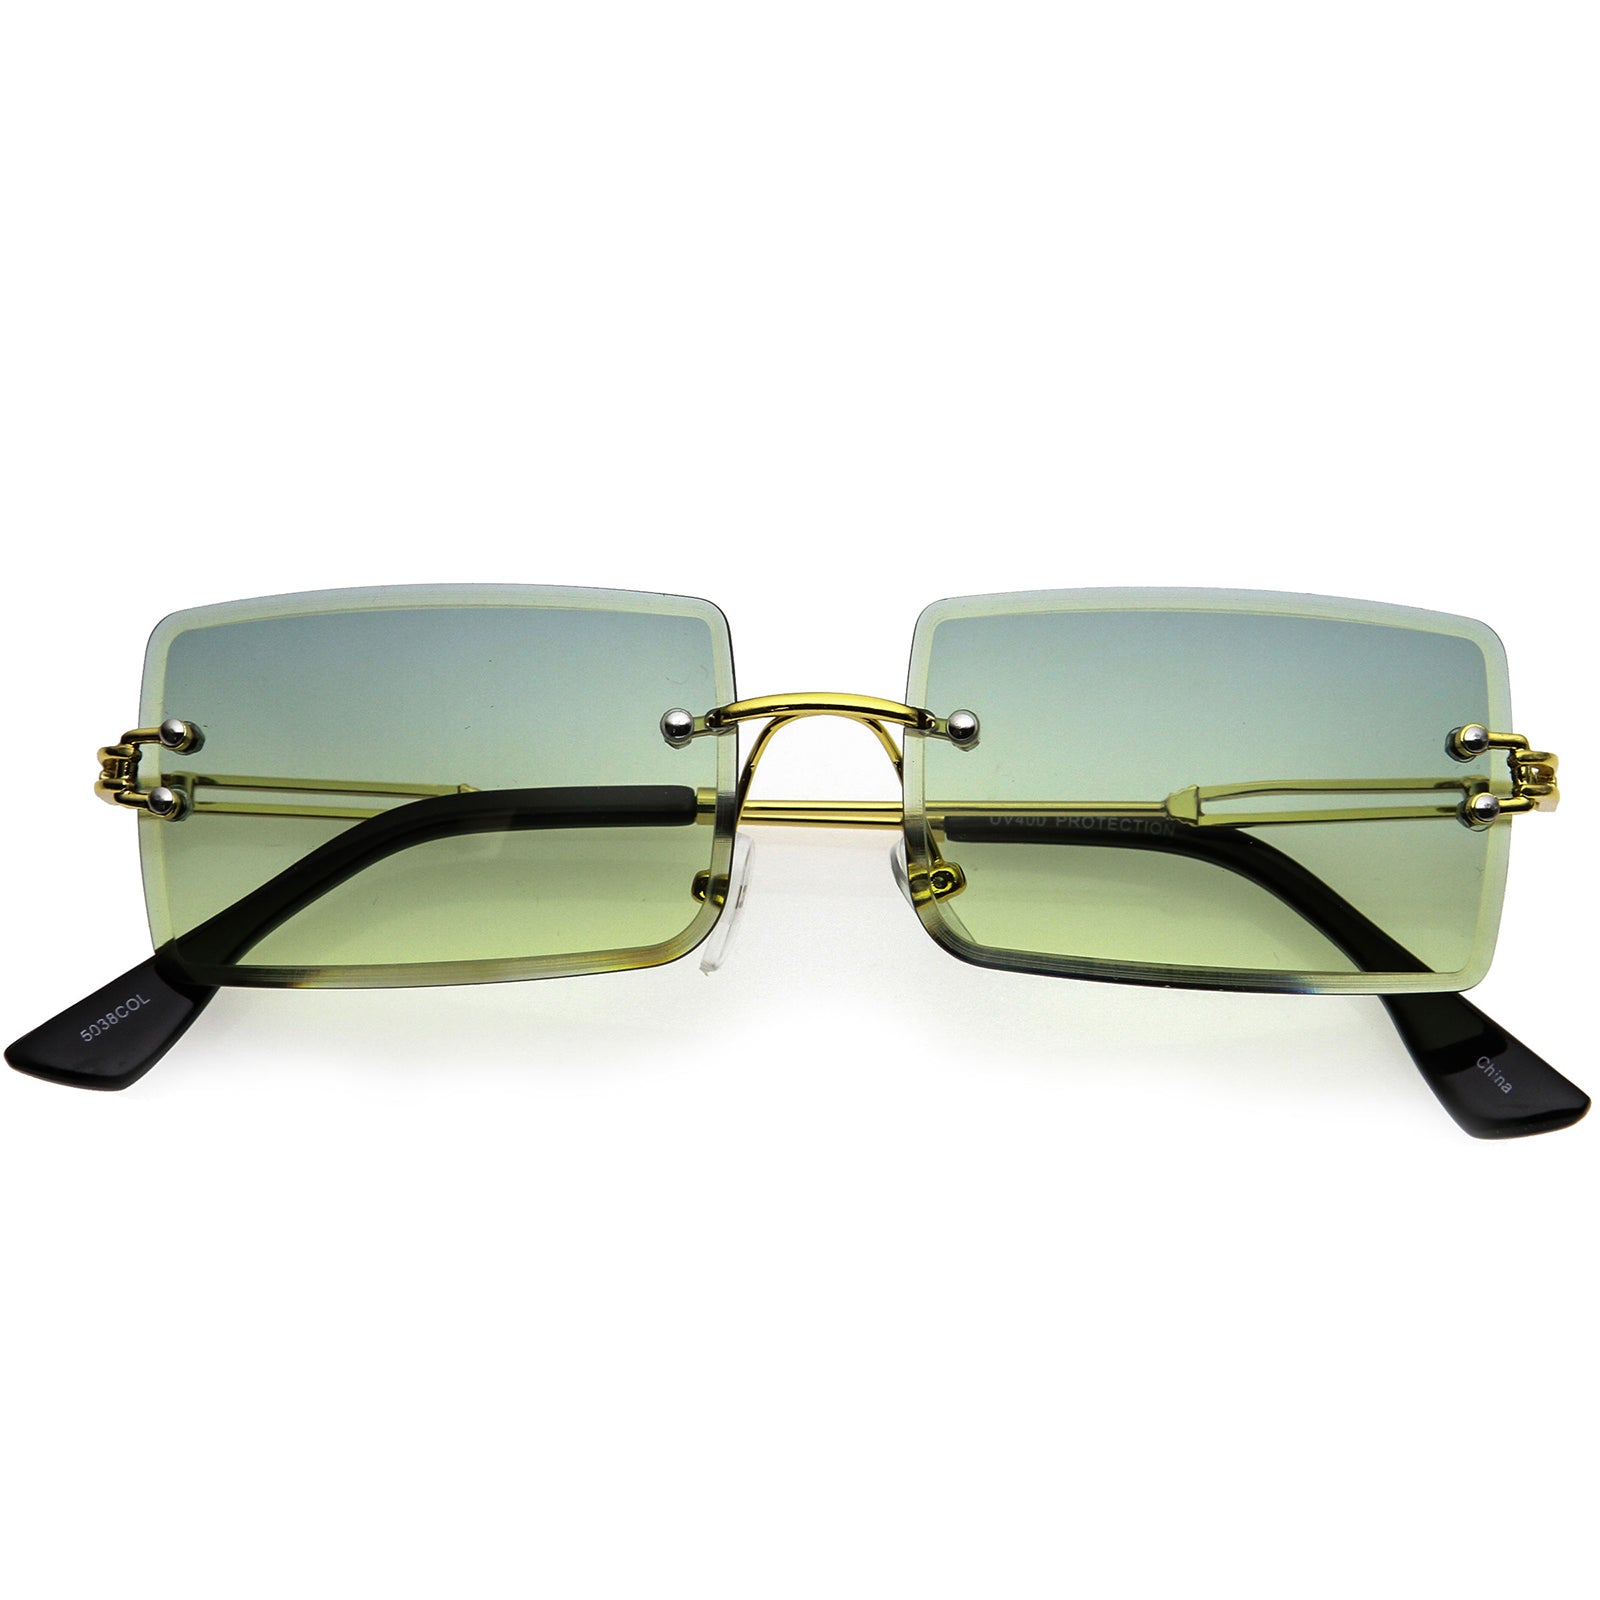 Luxe 90s Inspired Rimless Gradient Lens Medium Square Sunglasses 57mm